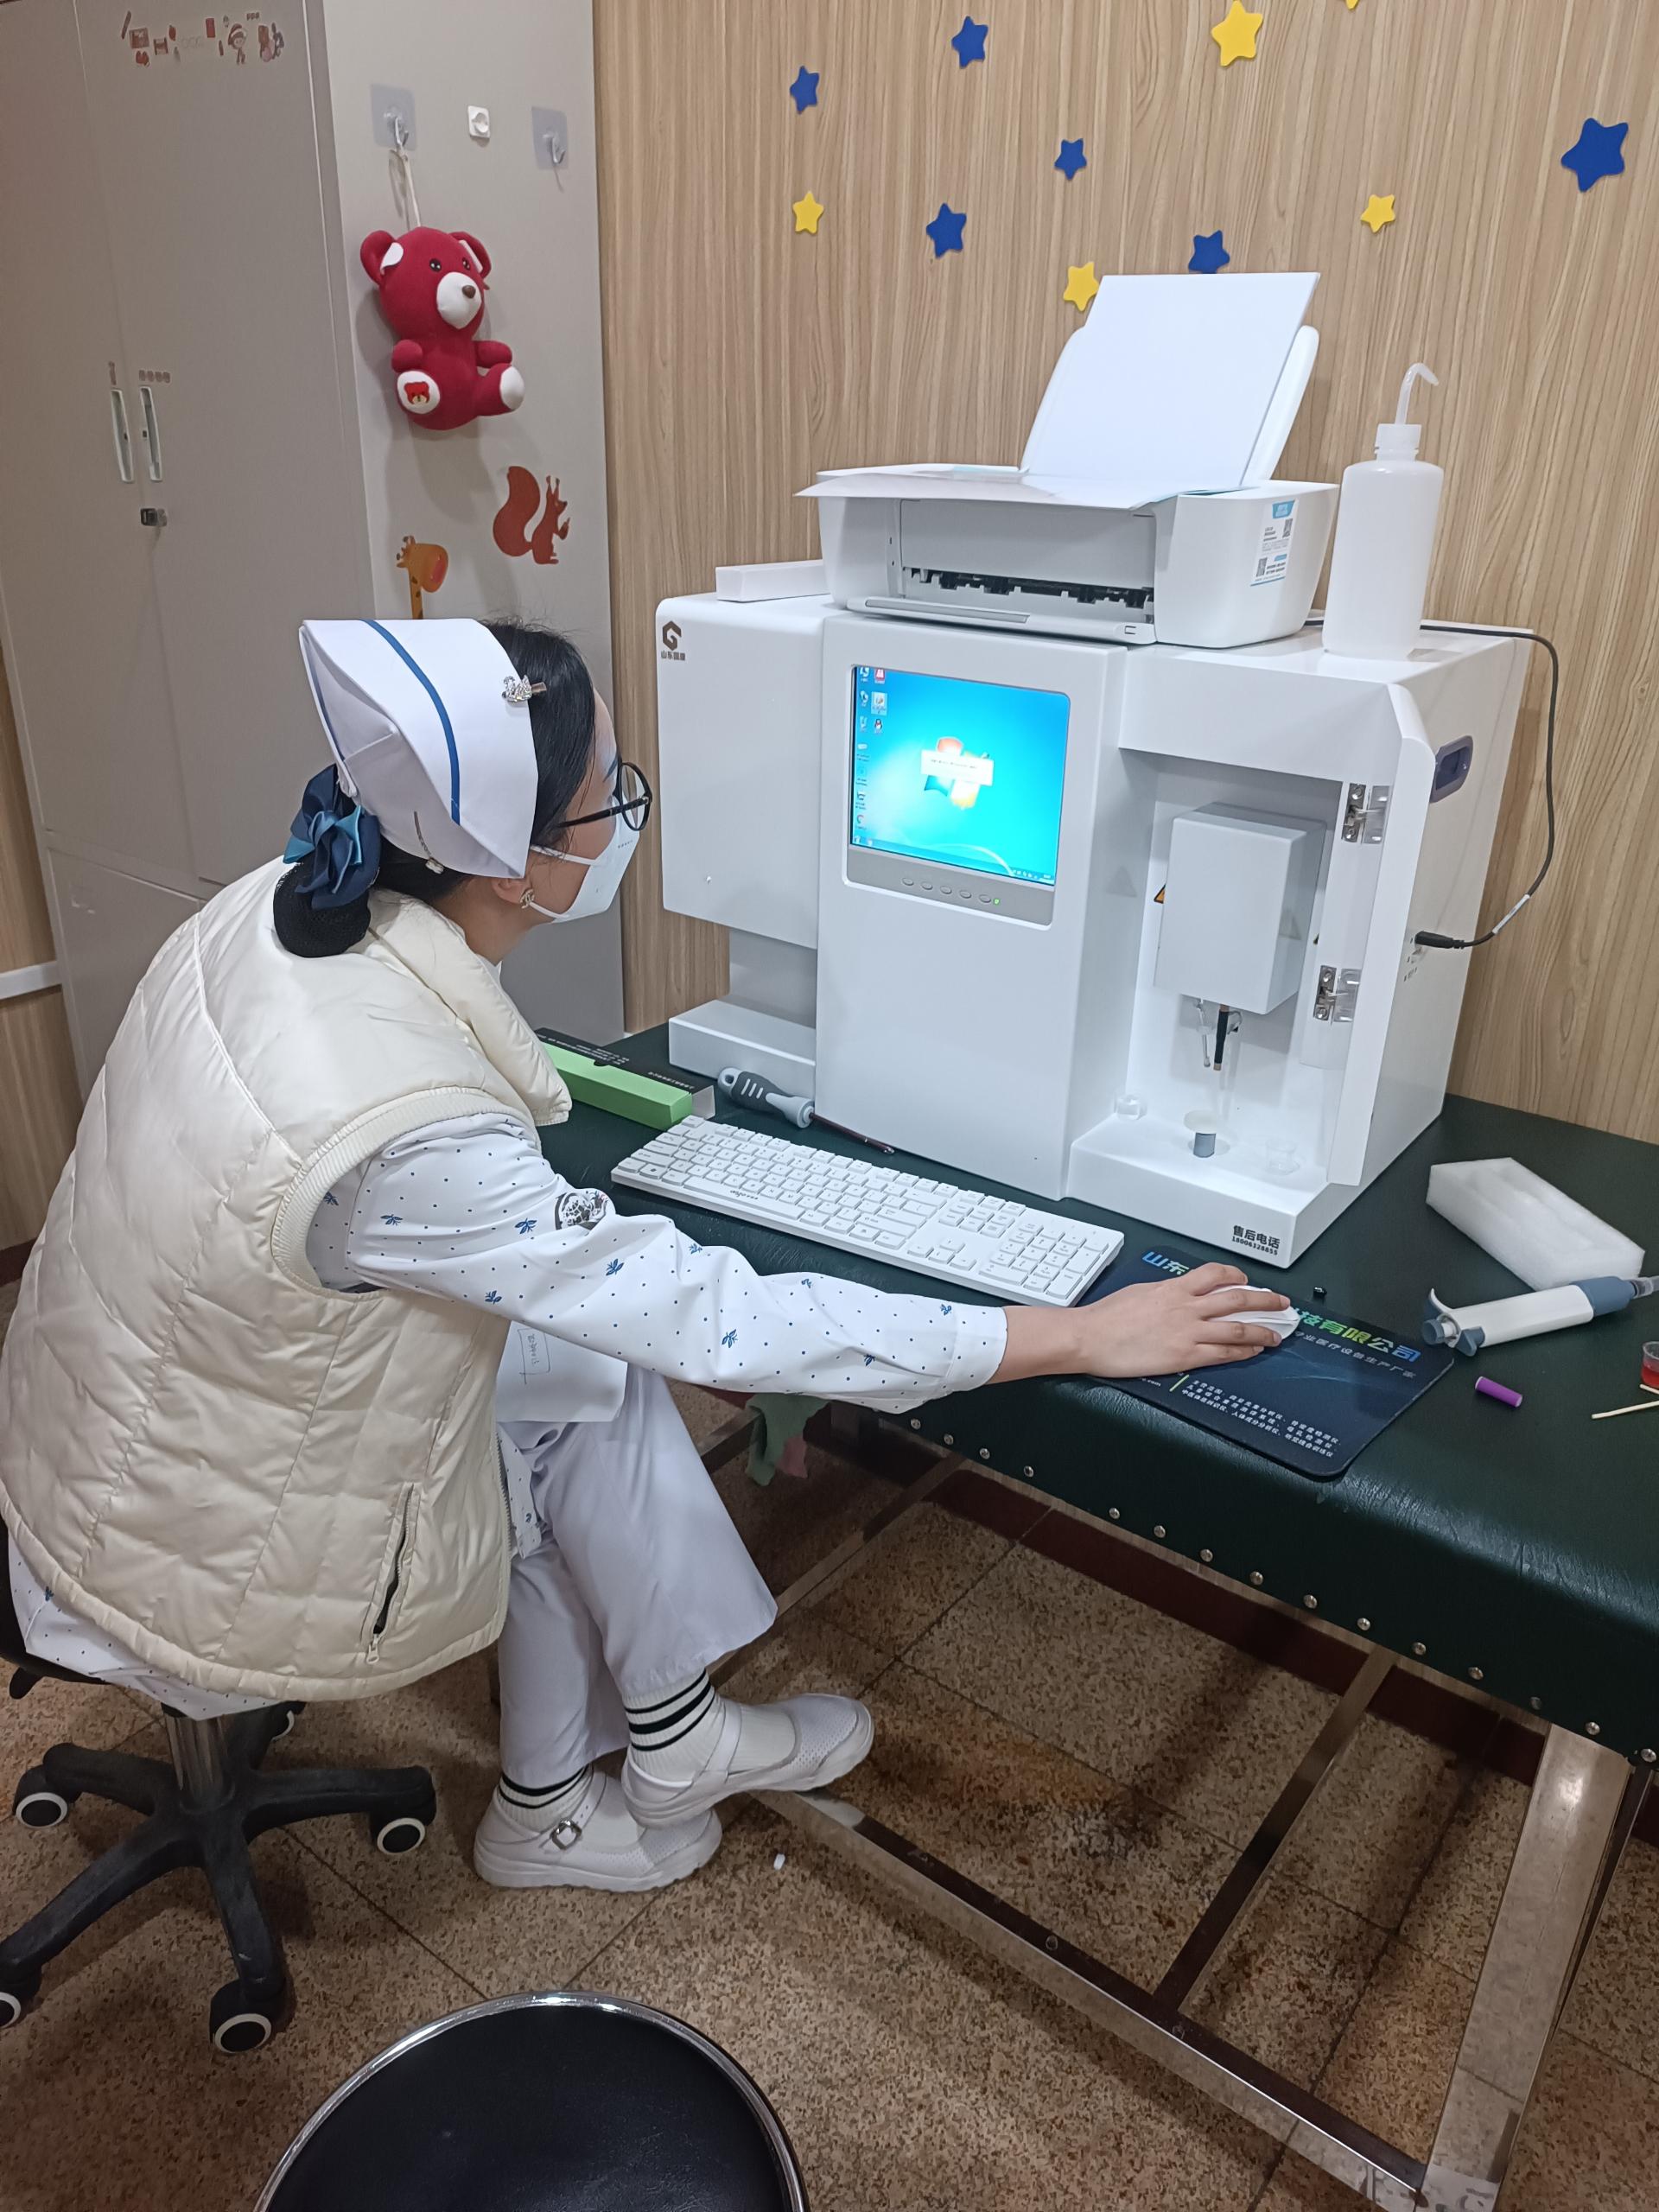 5.16号GK-1微量元素分析仪器在河北省保定市涿州市医院完成装机投入使用中